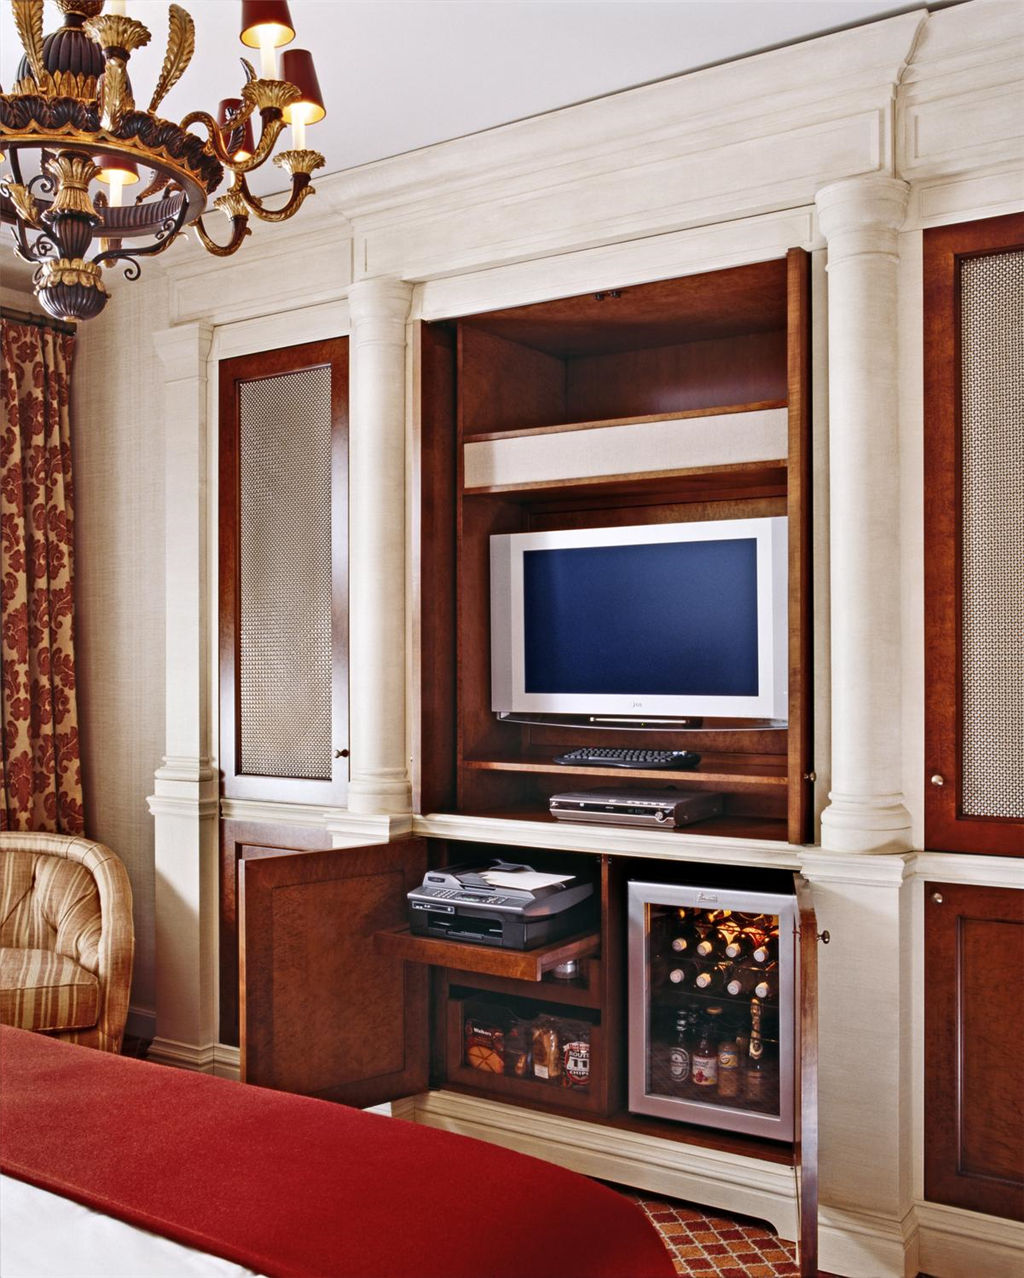 15)The St. Regis Washington, D.C.Deluxe Guest Room Ĕz.jpg